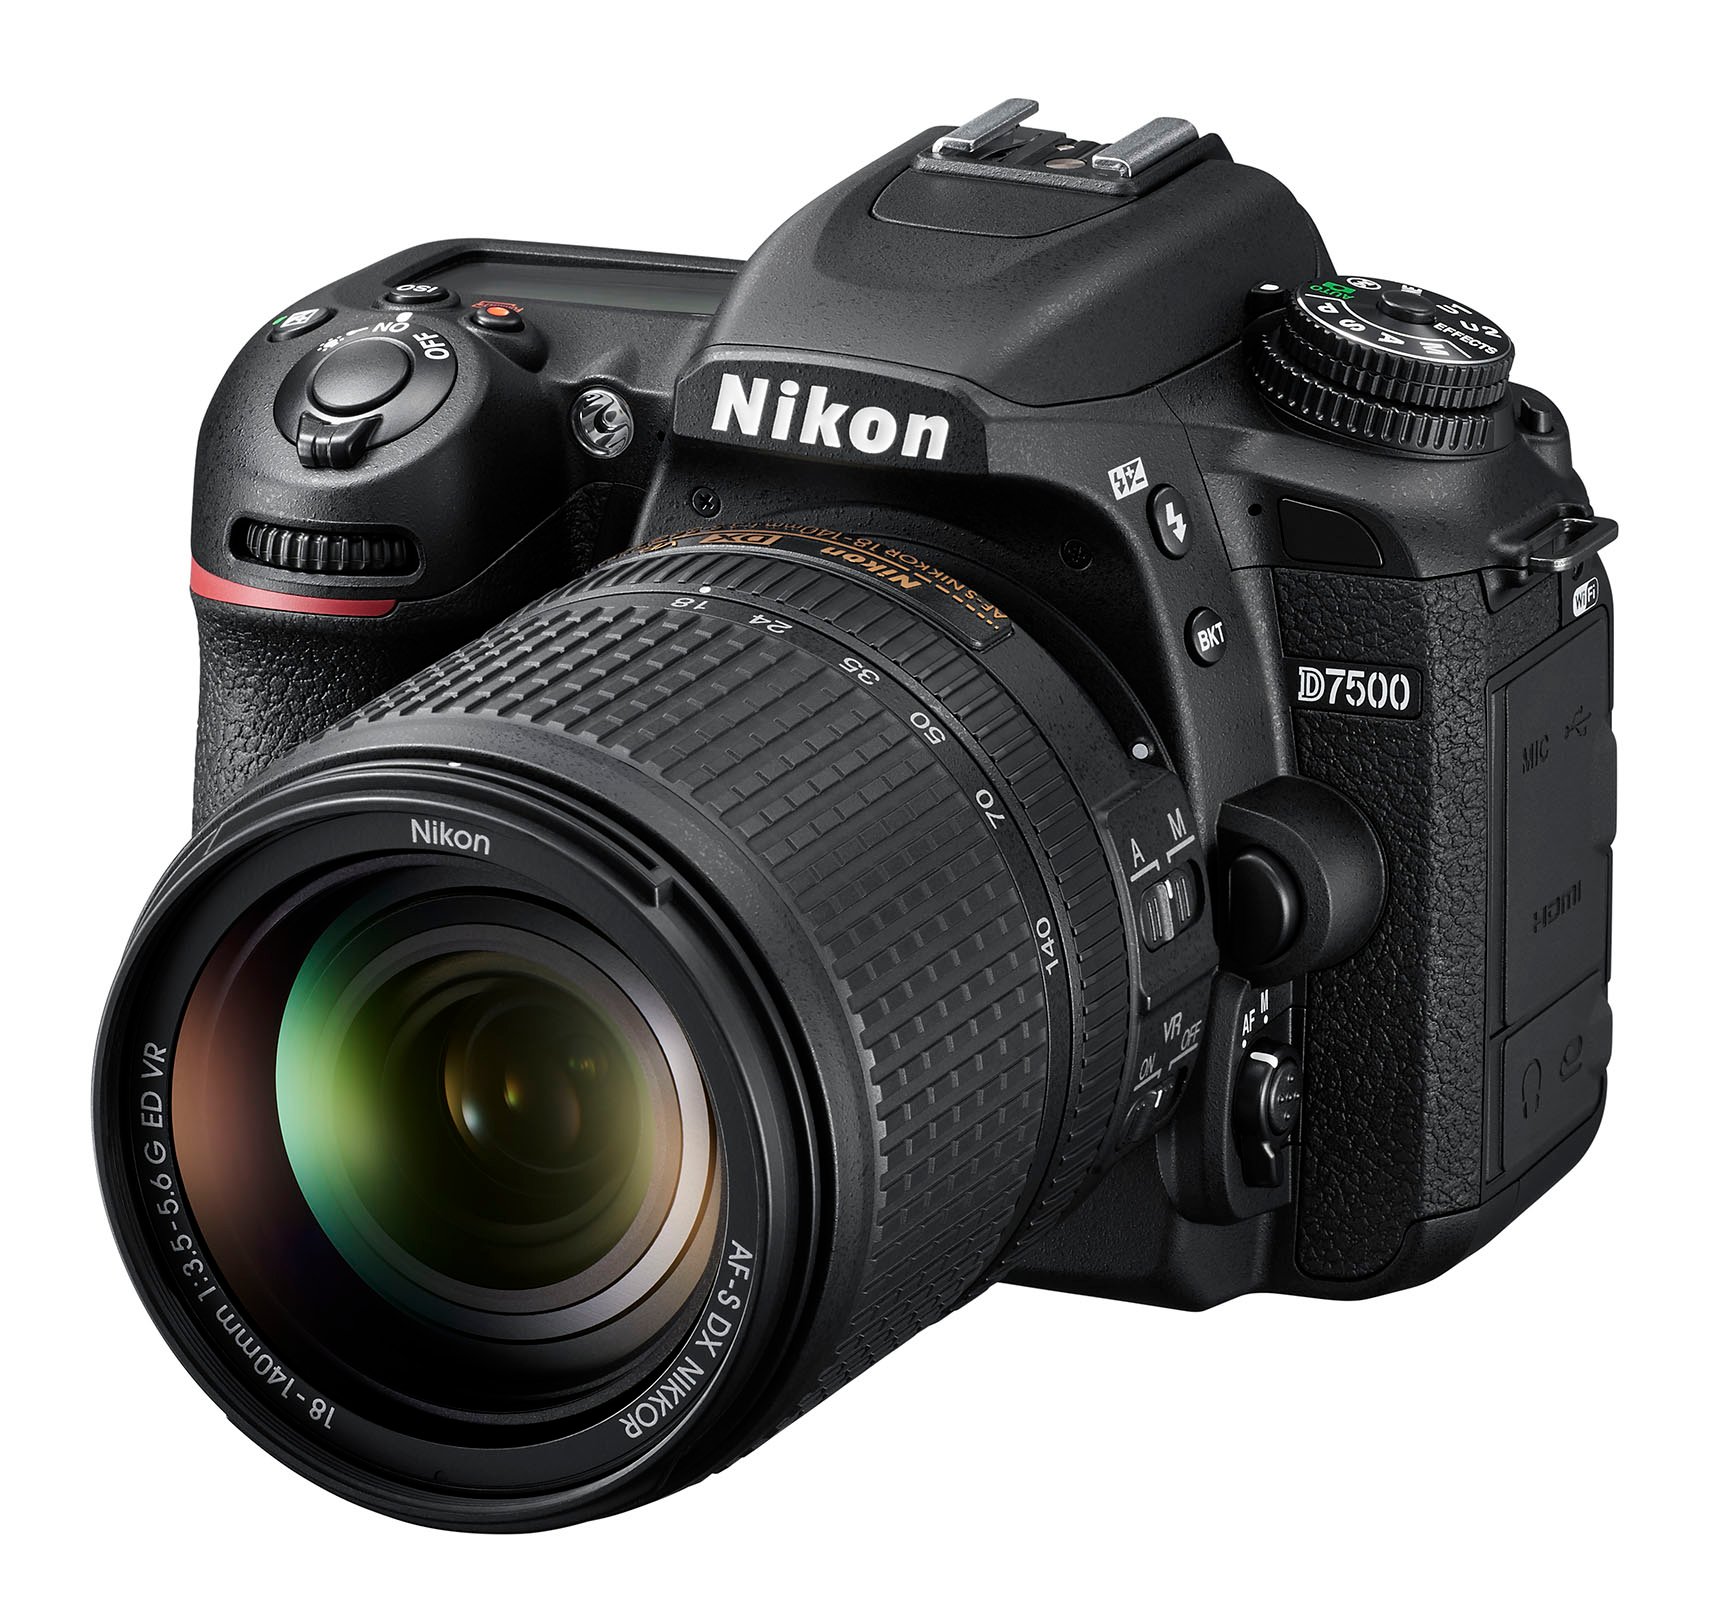 Nikon D7500 18-140mm Kit 20.9MP DSLR Camera With AF-S DX NIKKOR 18